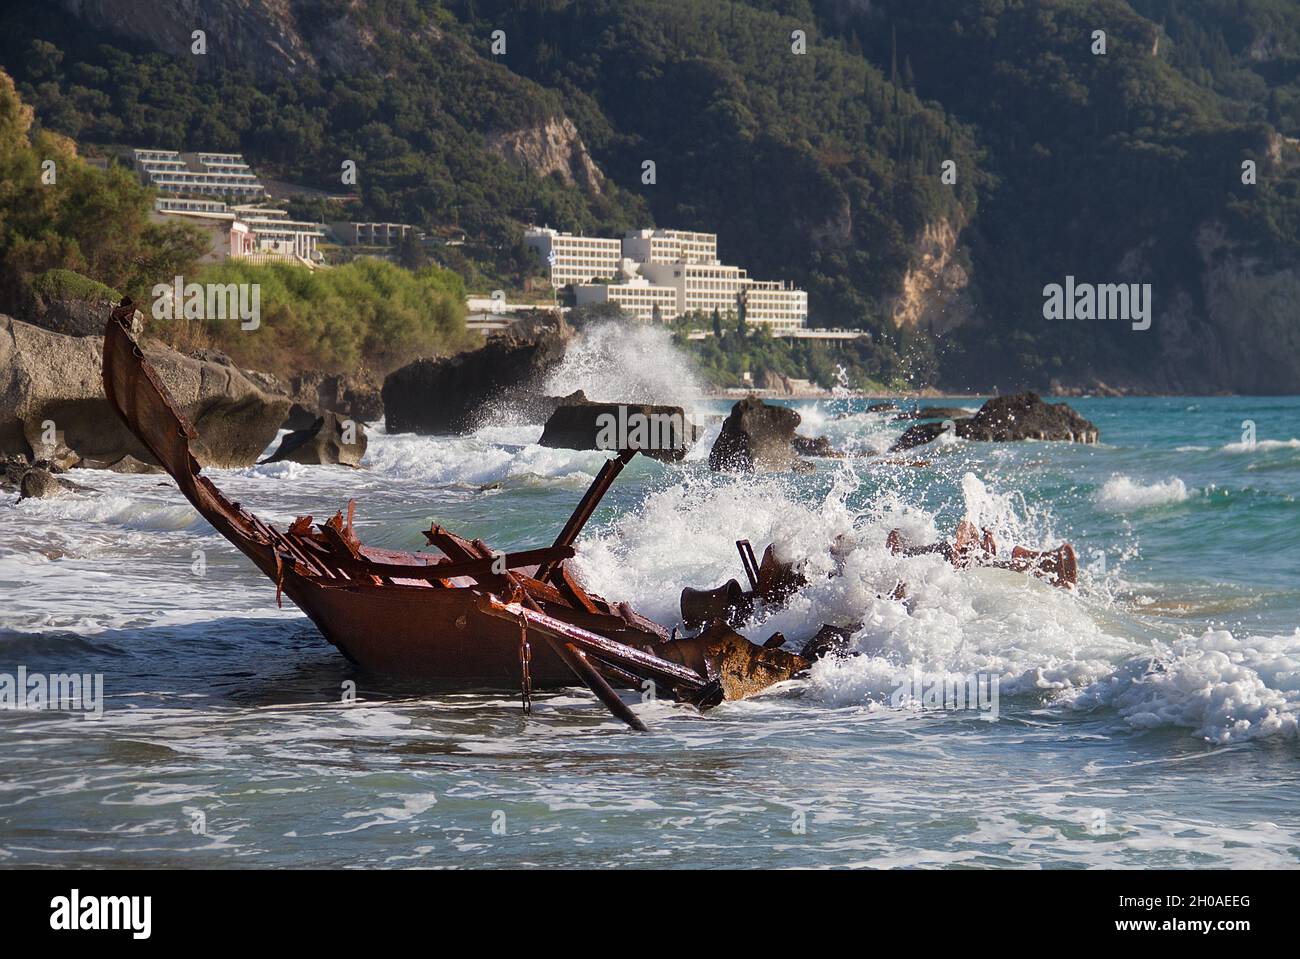 Onde che si infrangono sul relitto arrugginito di una nave da pesca rotta e bloccata, sullo sfondo un resort turistico Foto Stock